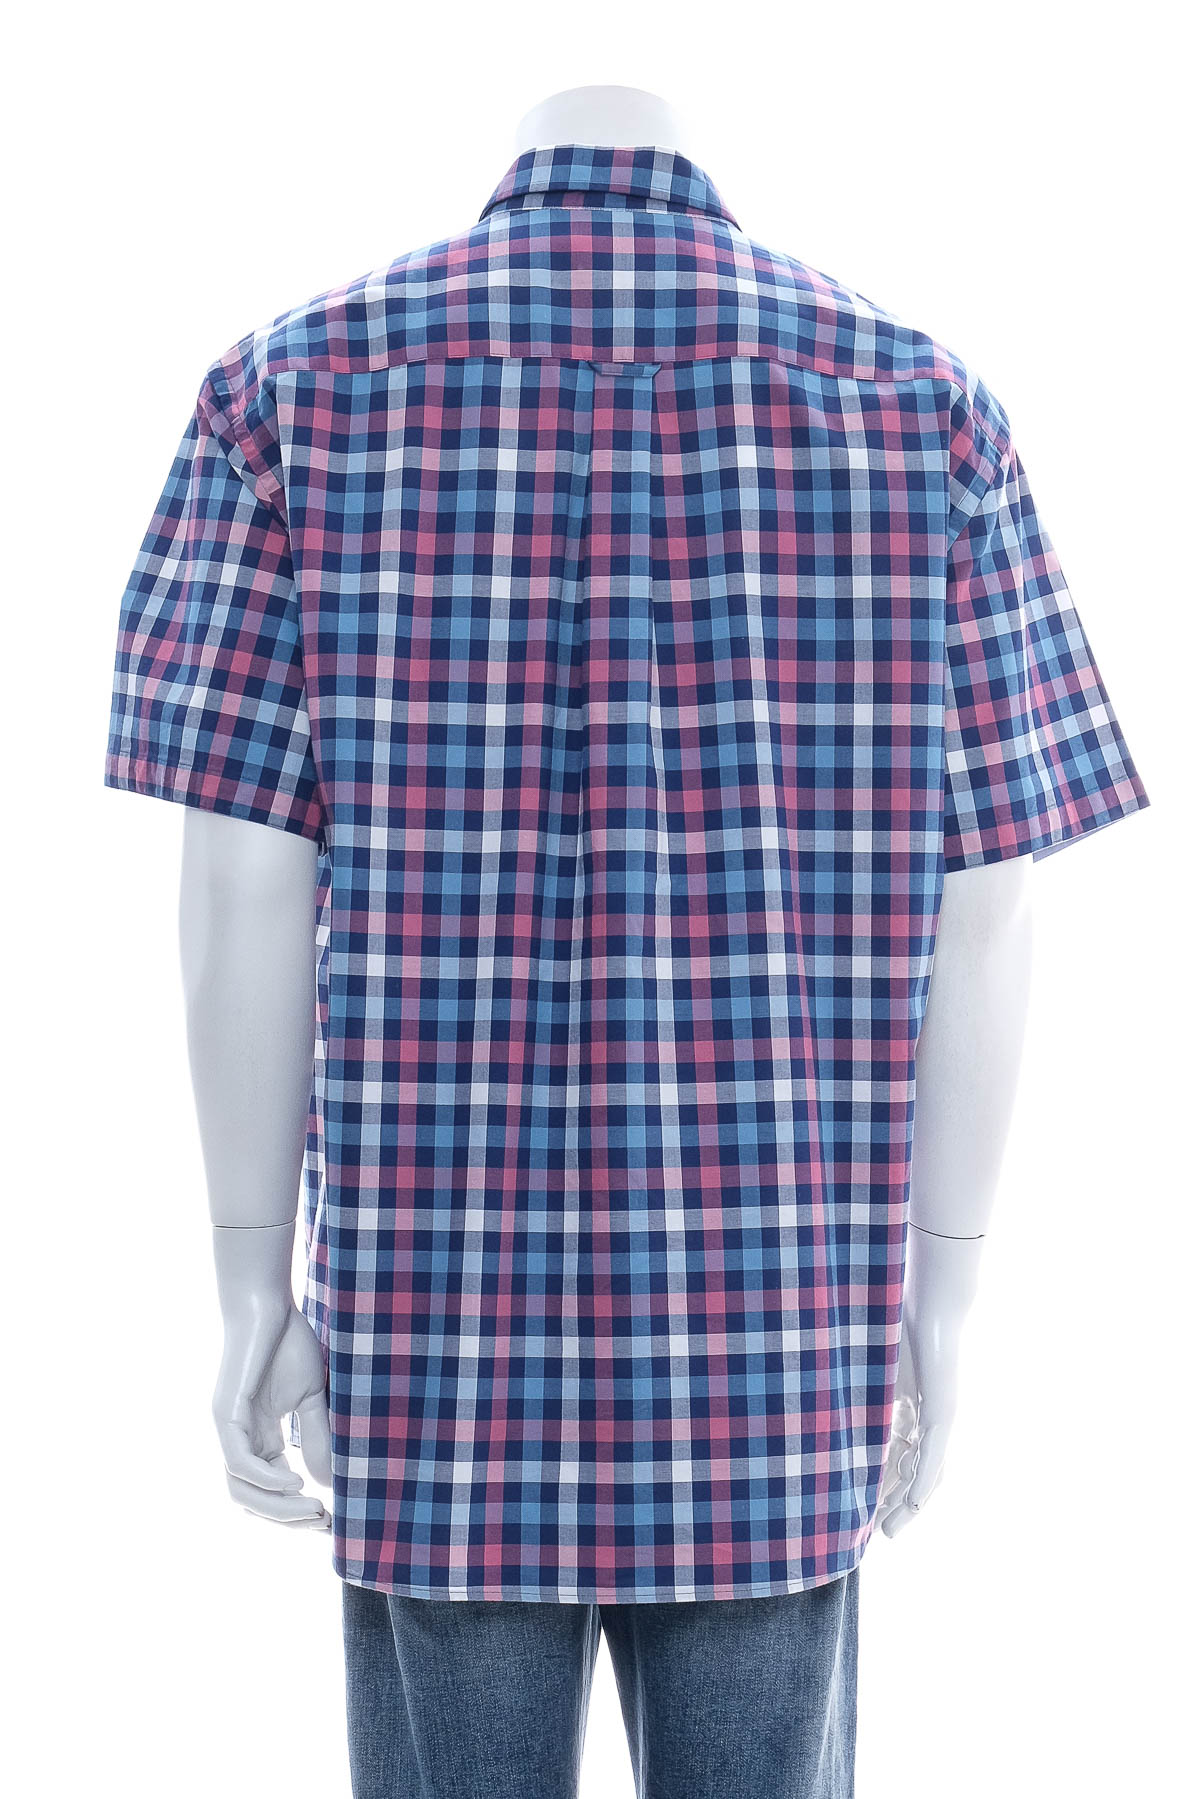 Men's shirt - GAZMAN - 1